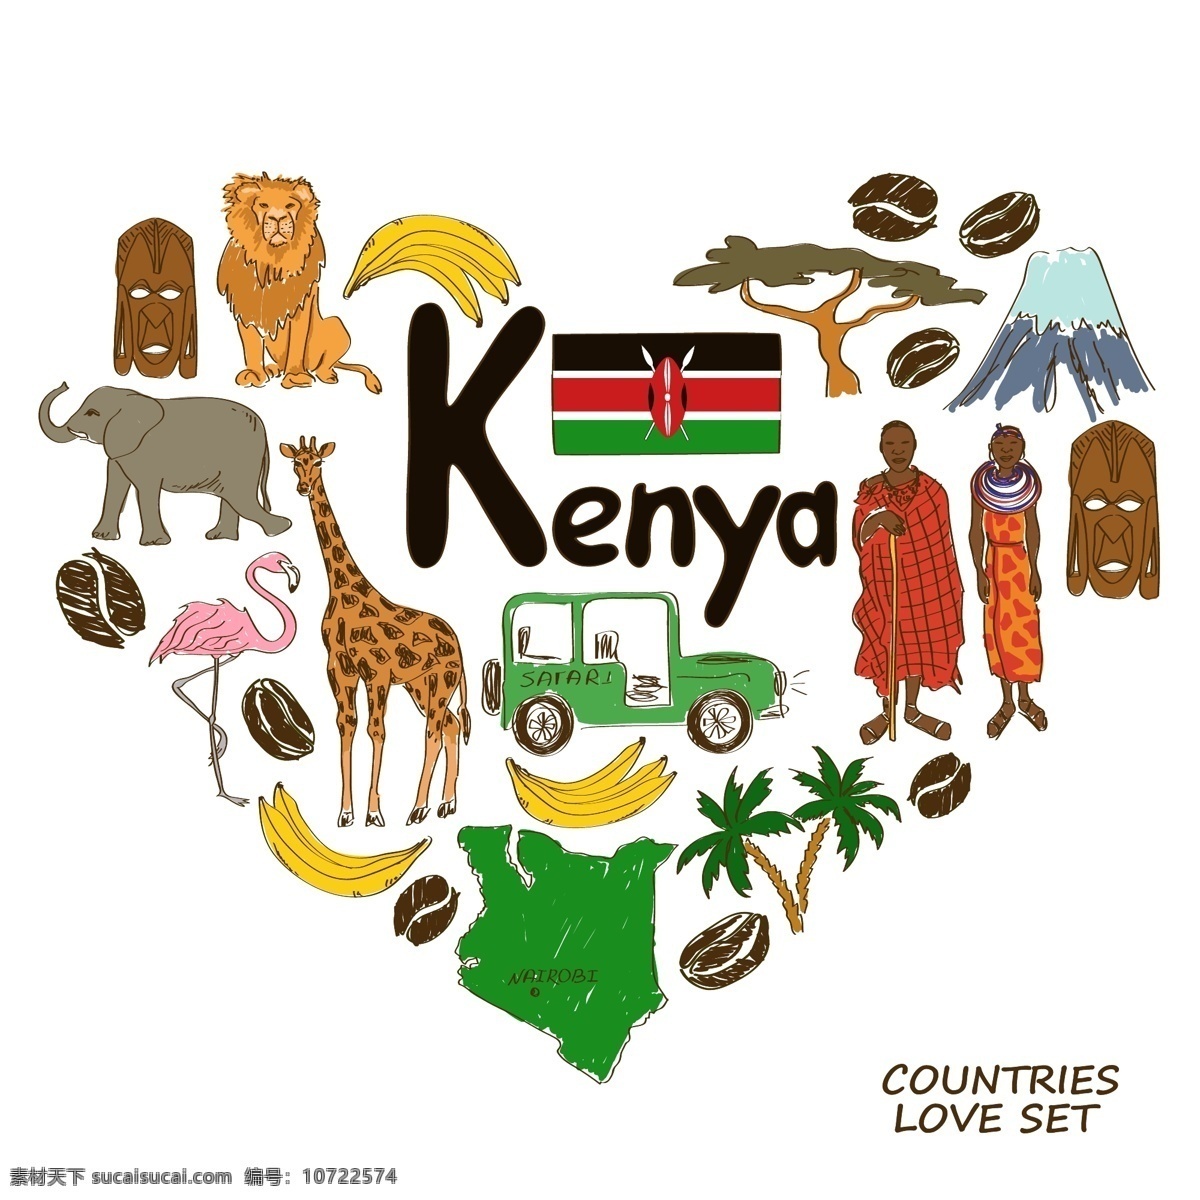 肯尼亚 国家 元素 国家元素 国家象征 矢量 手绘 肯尼亚娅 设计素材库 文化艺术 绘画书法